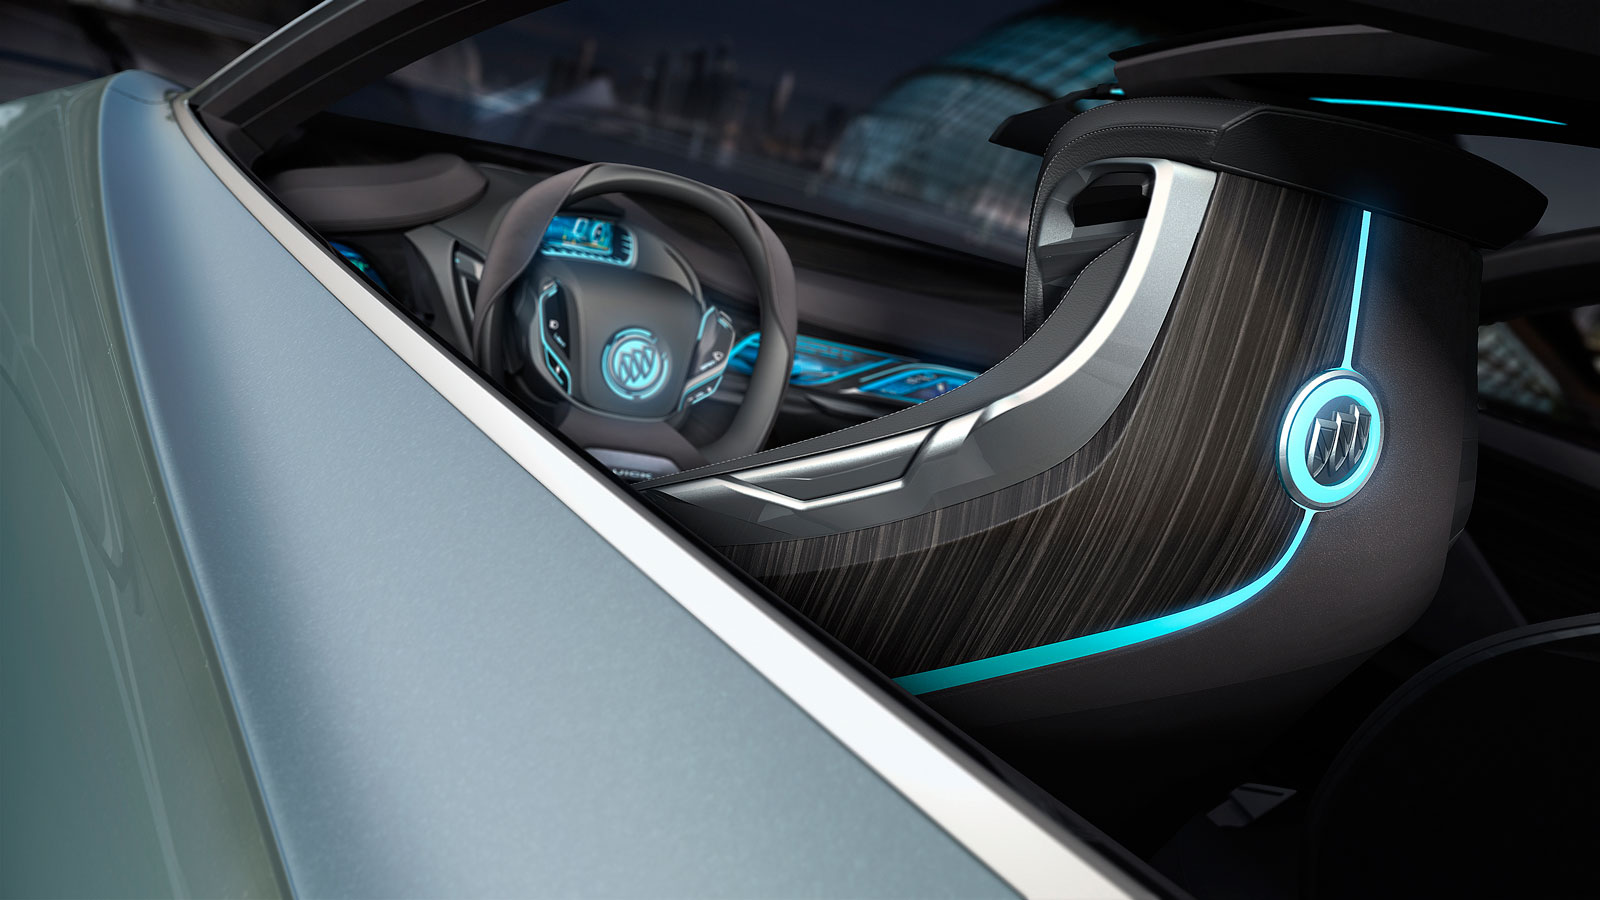 Buick Riviera Concept, 2013 - Interior